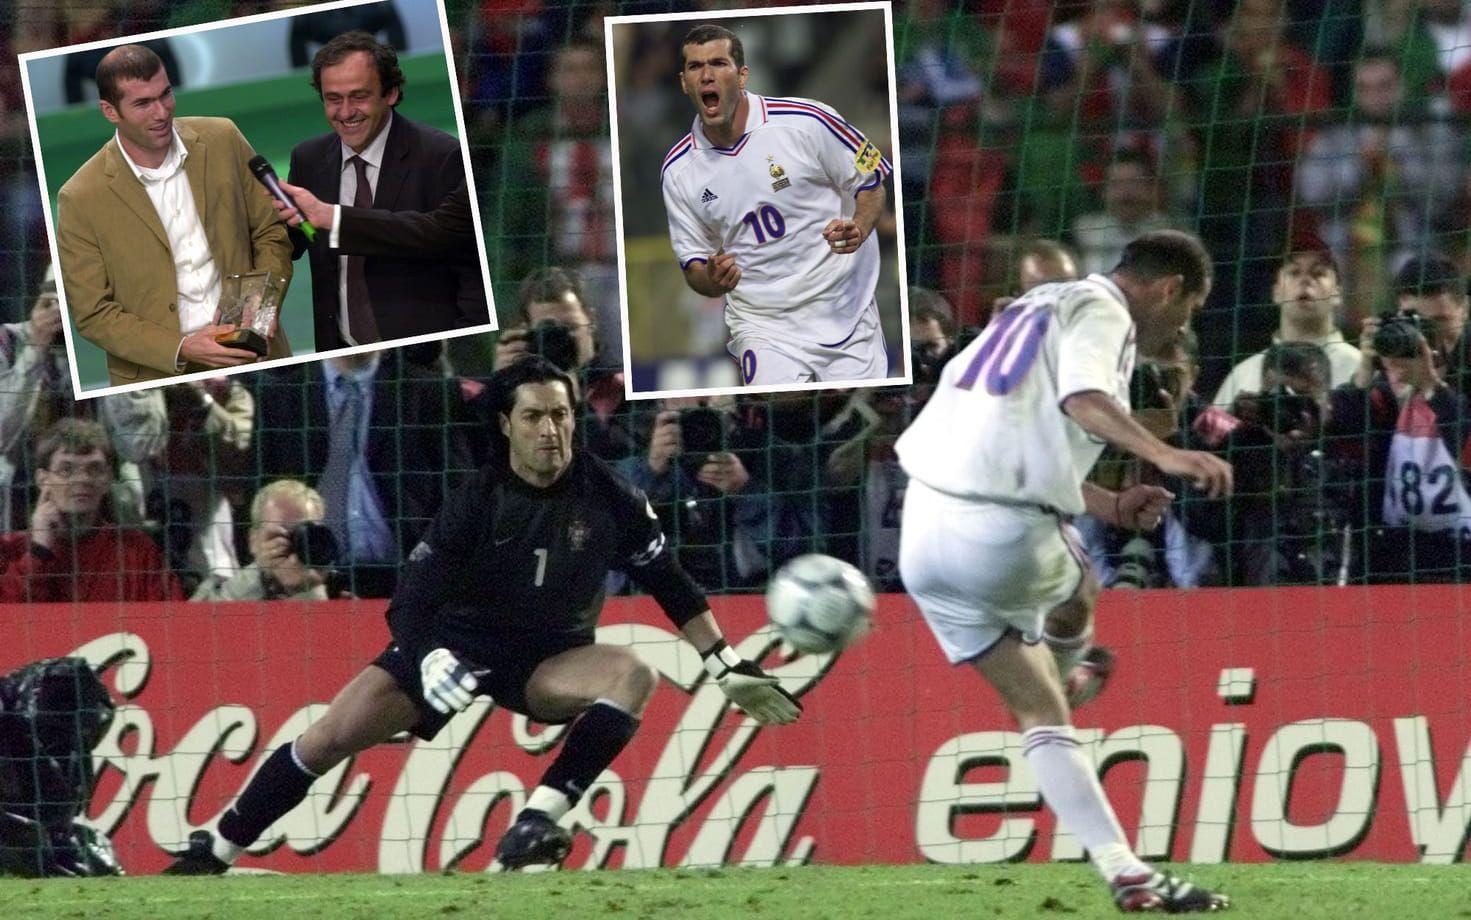 2000. Vinnare: Zinedine Zidane, Frankrike och Juventus. Fransmannens vann före Luis Figo och Rivaldo. Foto: TT